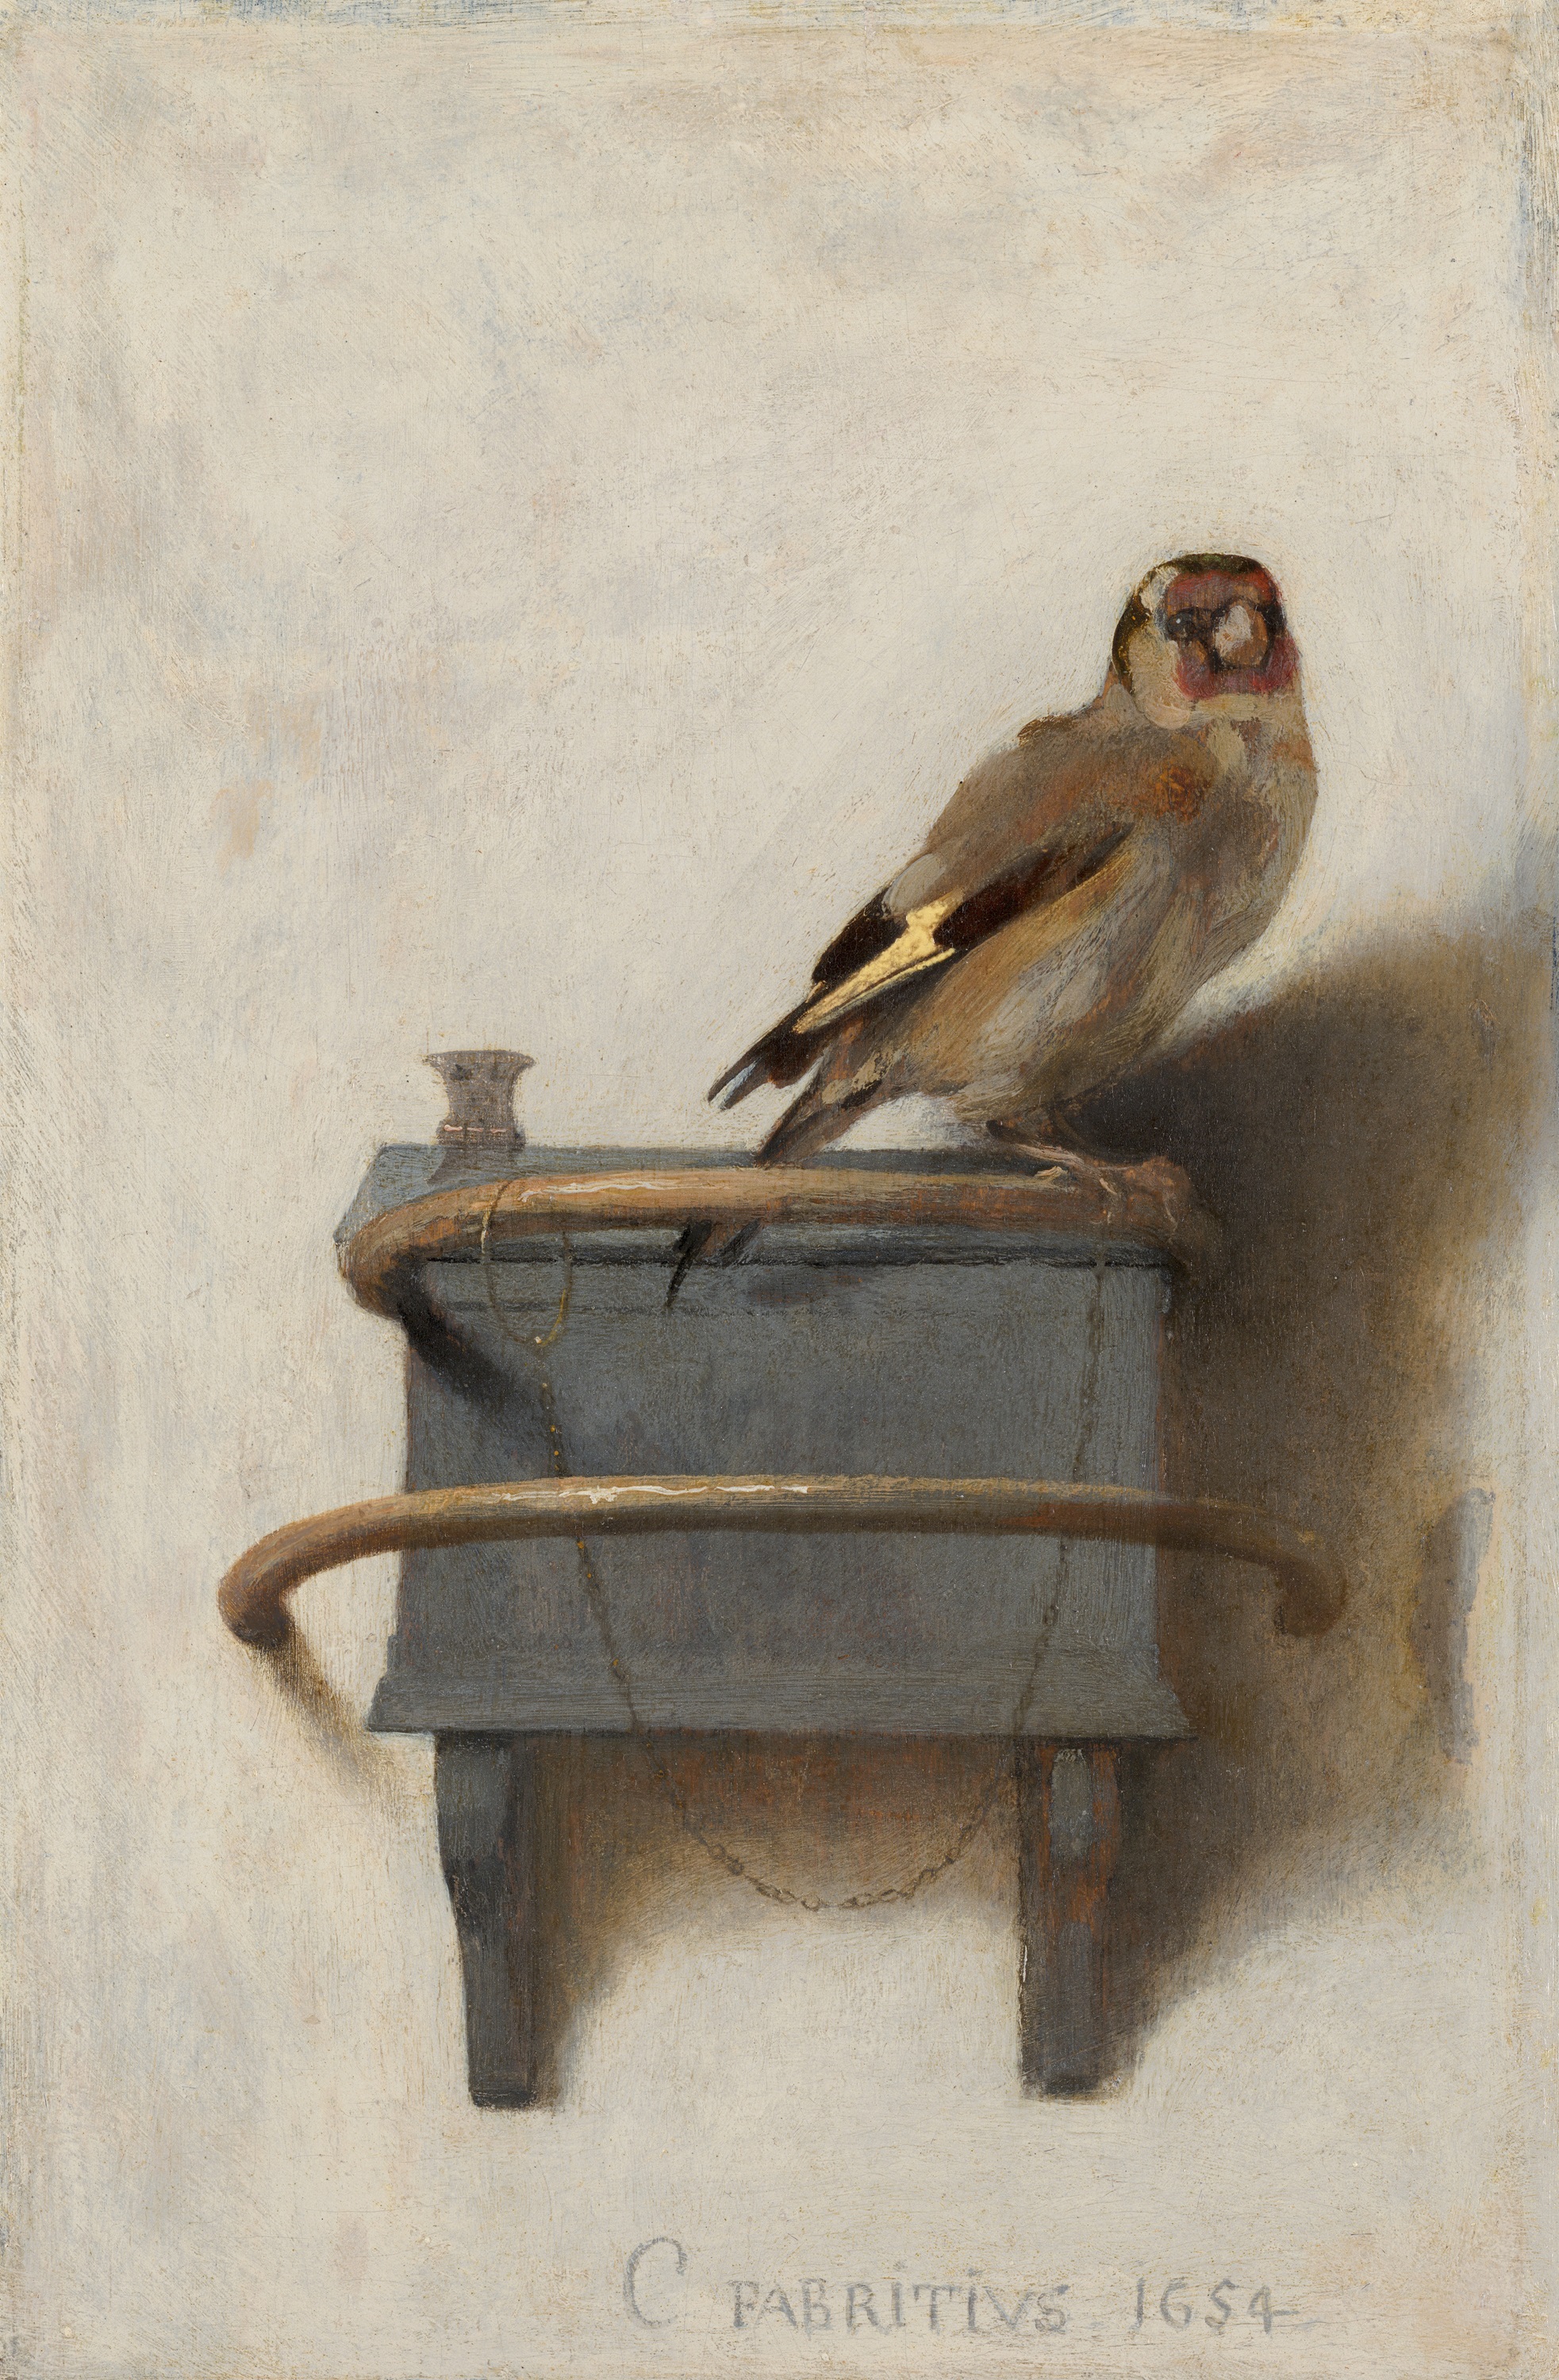 金翅雀 by Carel Fabritius - 1654 年 - 33.5 x 22.8 釐米 